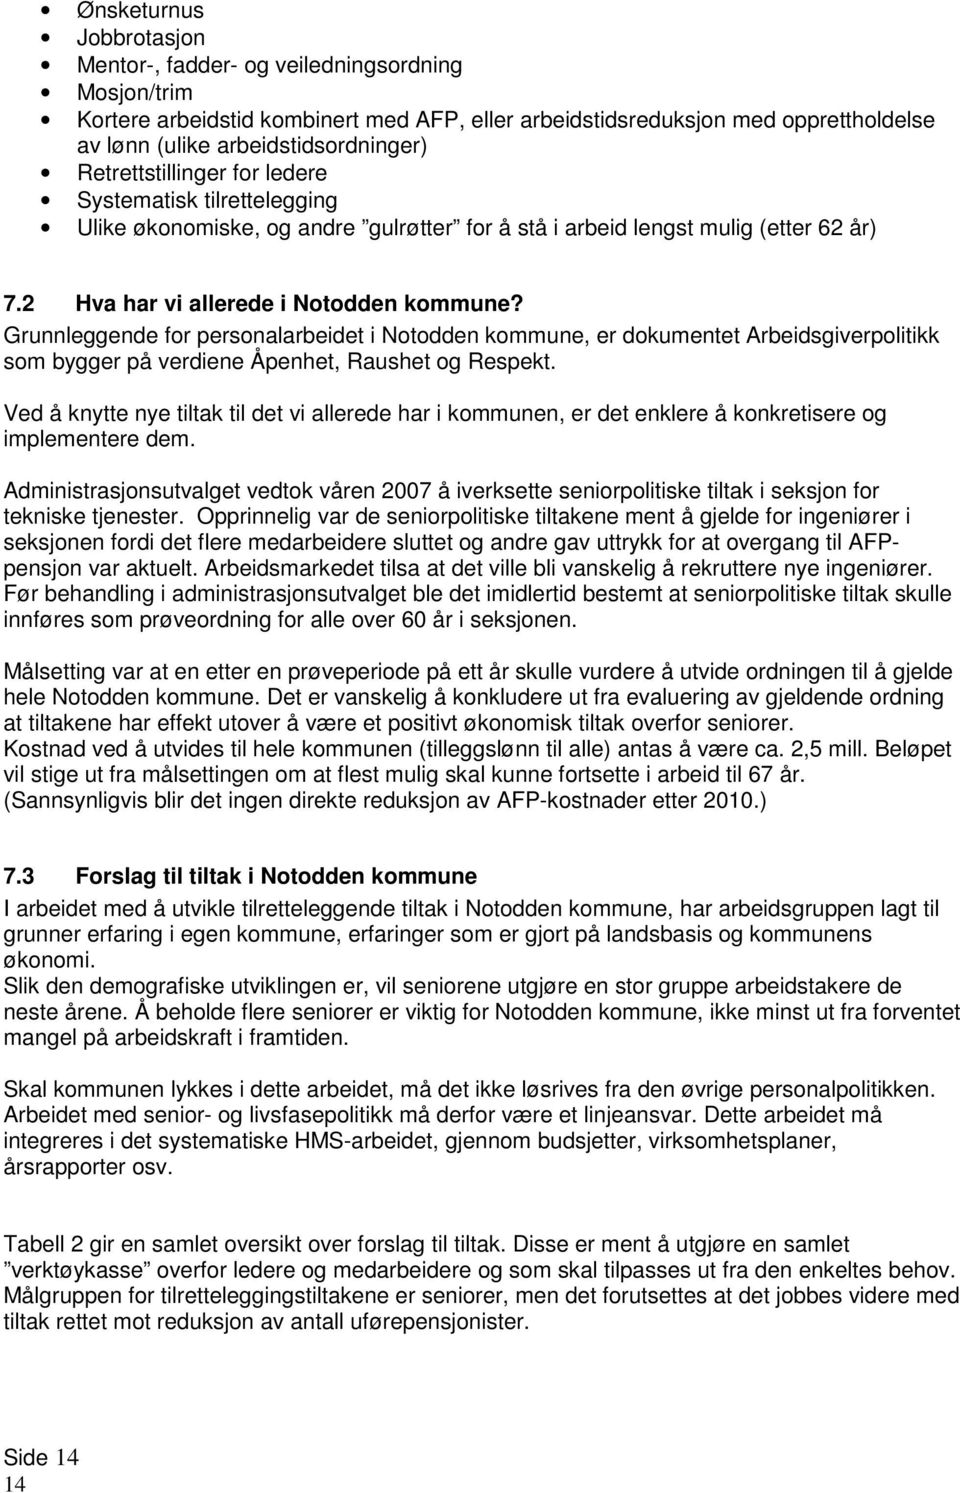 Grunnleggende for personalarbeidet i Notodden kommune, er dokumentet Arbeidsgiverpolitikk som bygger på verdiene Åpenhet, Raushet og Respekt.